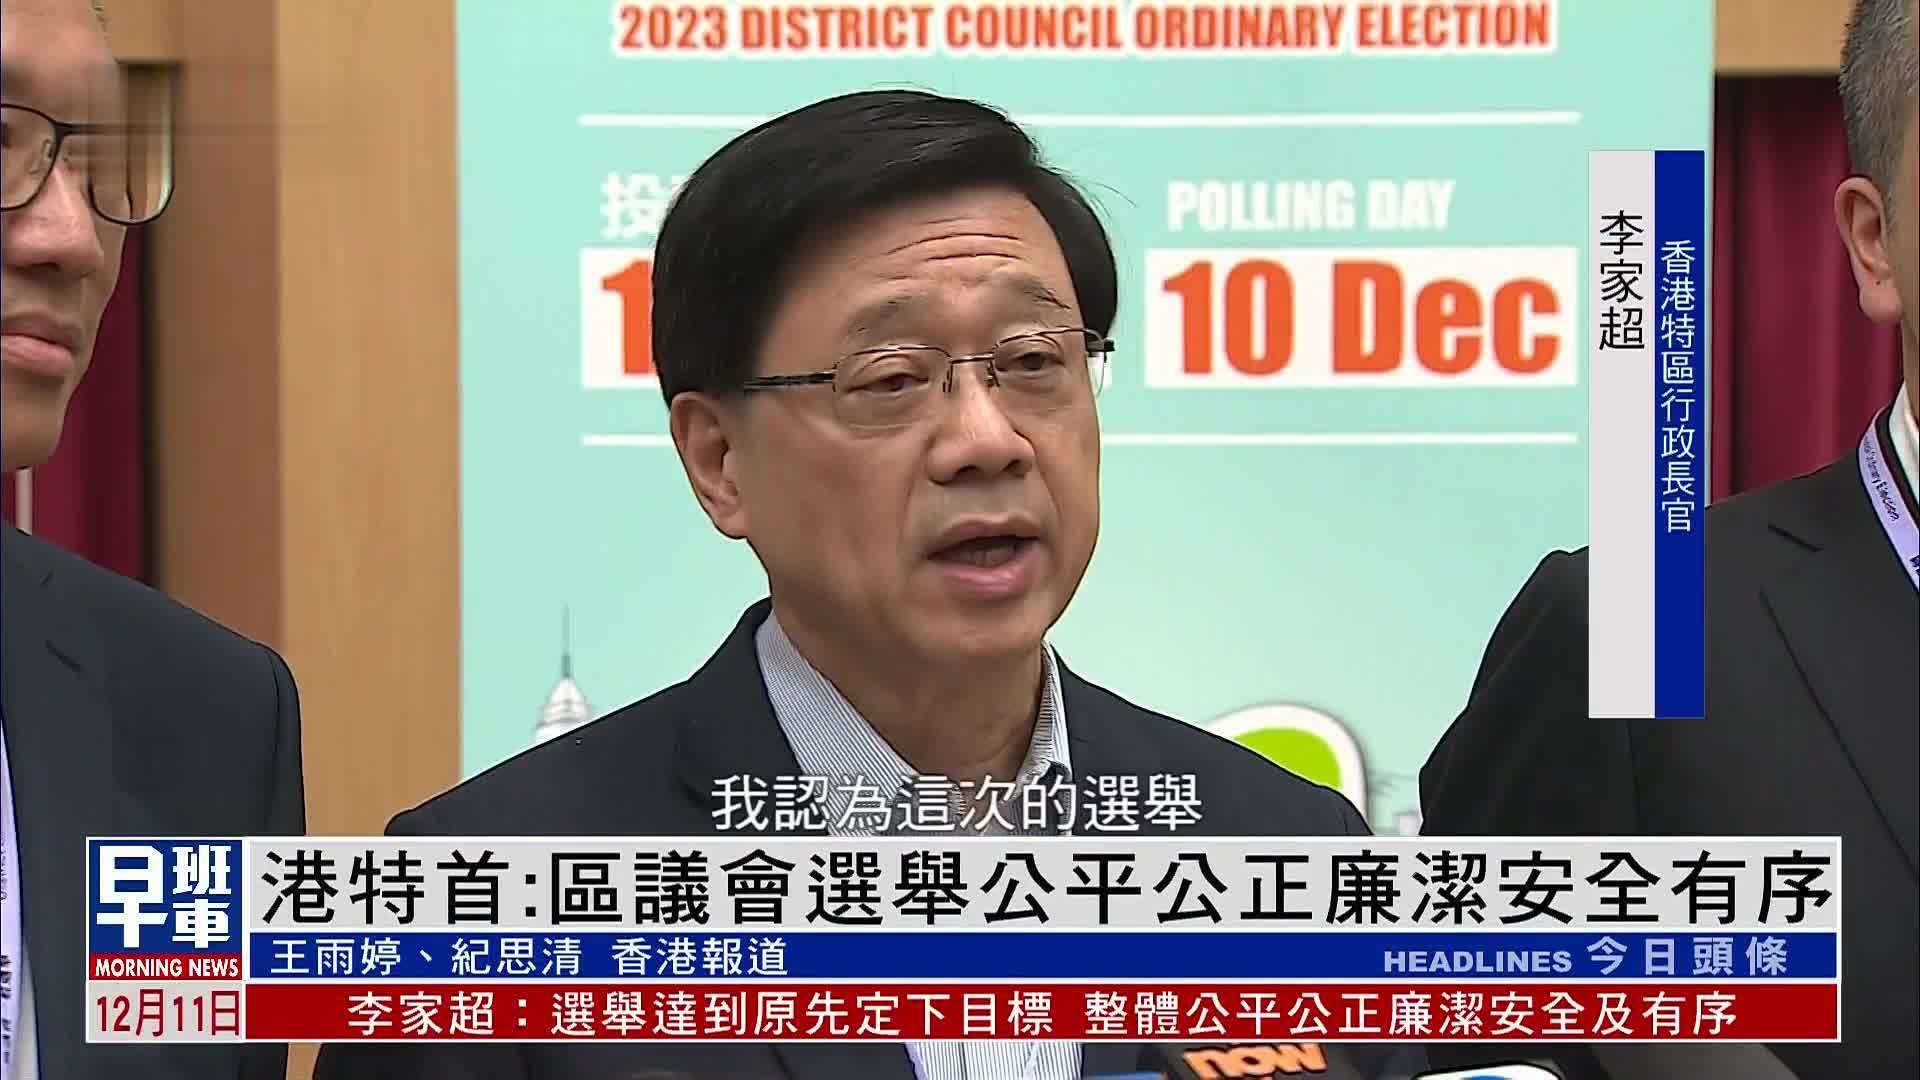 香港特首选举图片